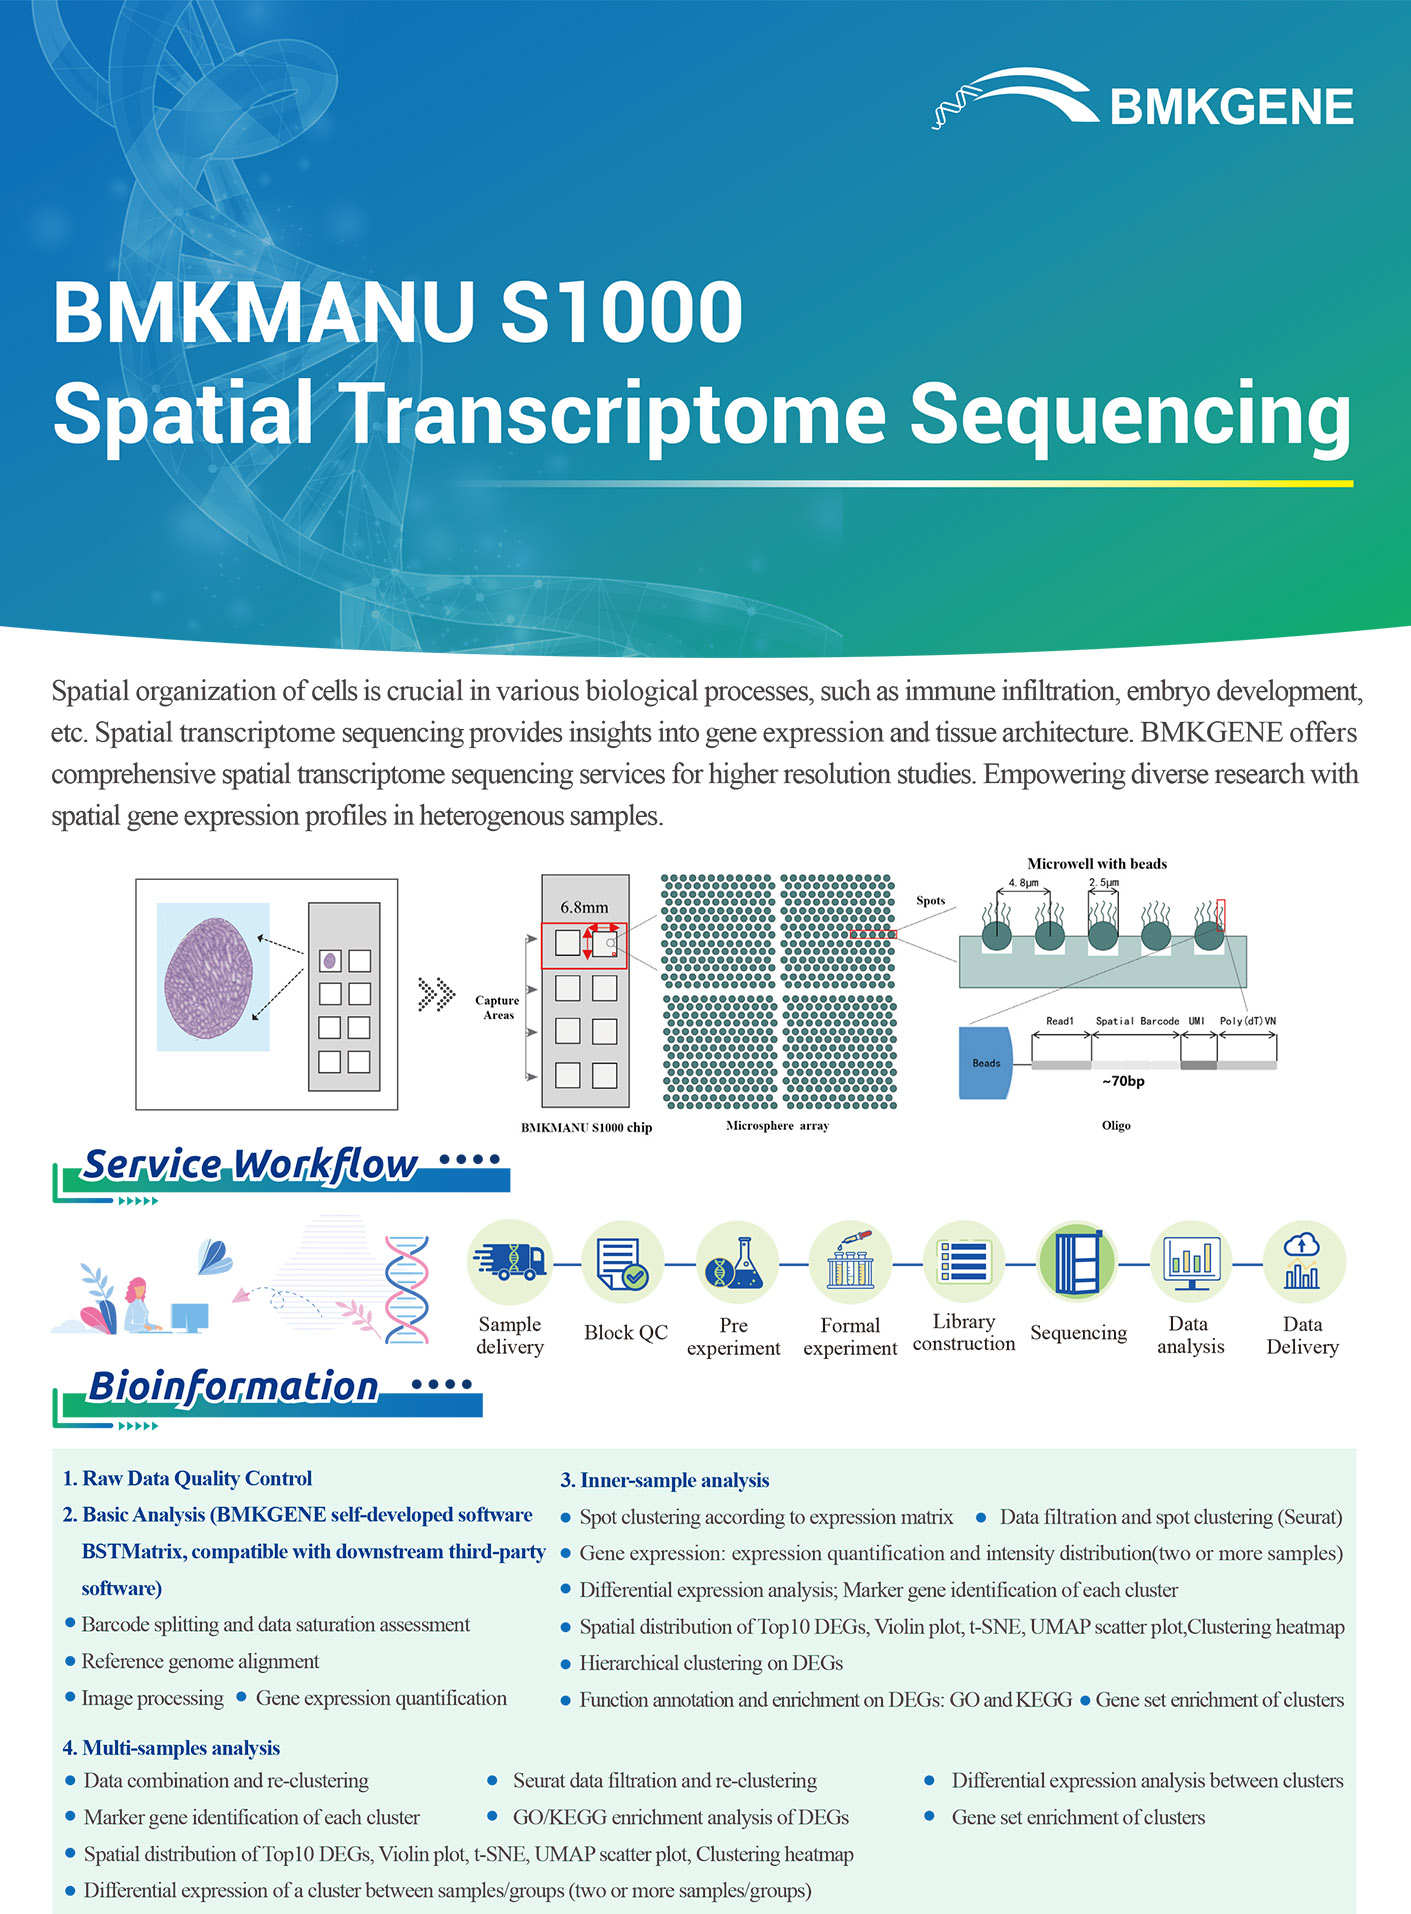 http://www.bmkgene.com/uploads/BMKMANU-S1000-Spatial-Transcriptome-Sequencing-BMKGENE-2310.pdf